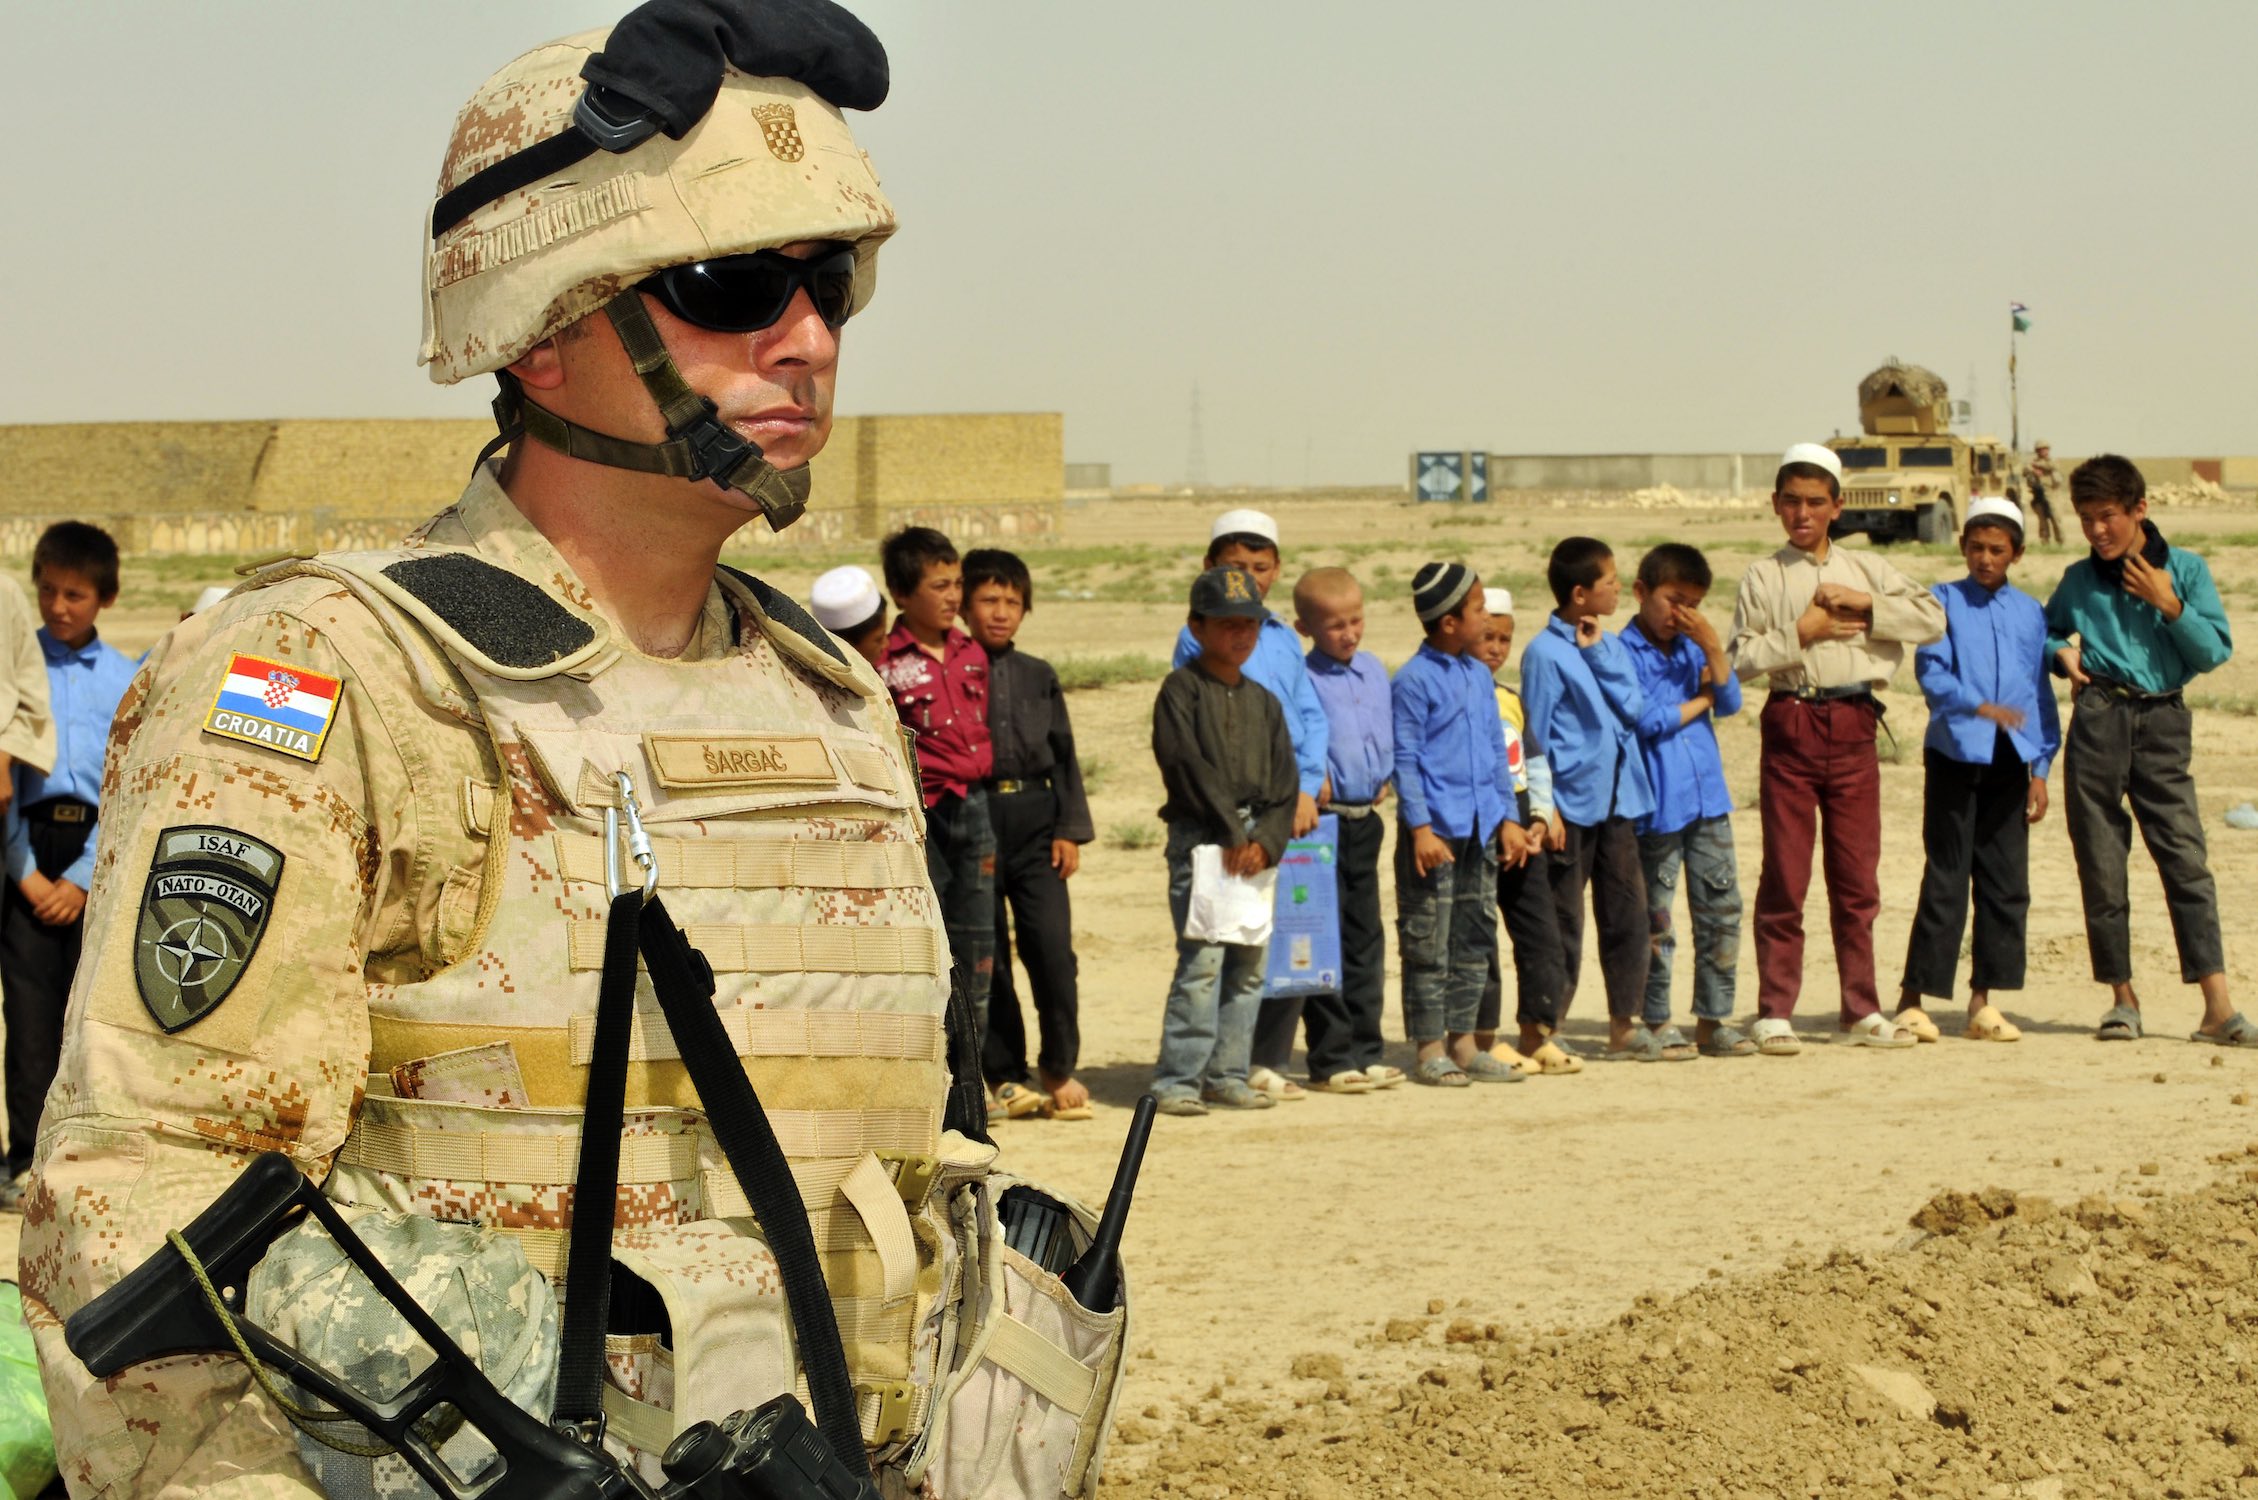 Croatian soldier in Afghanistan